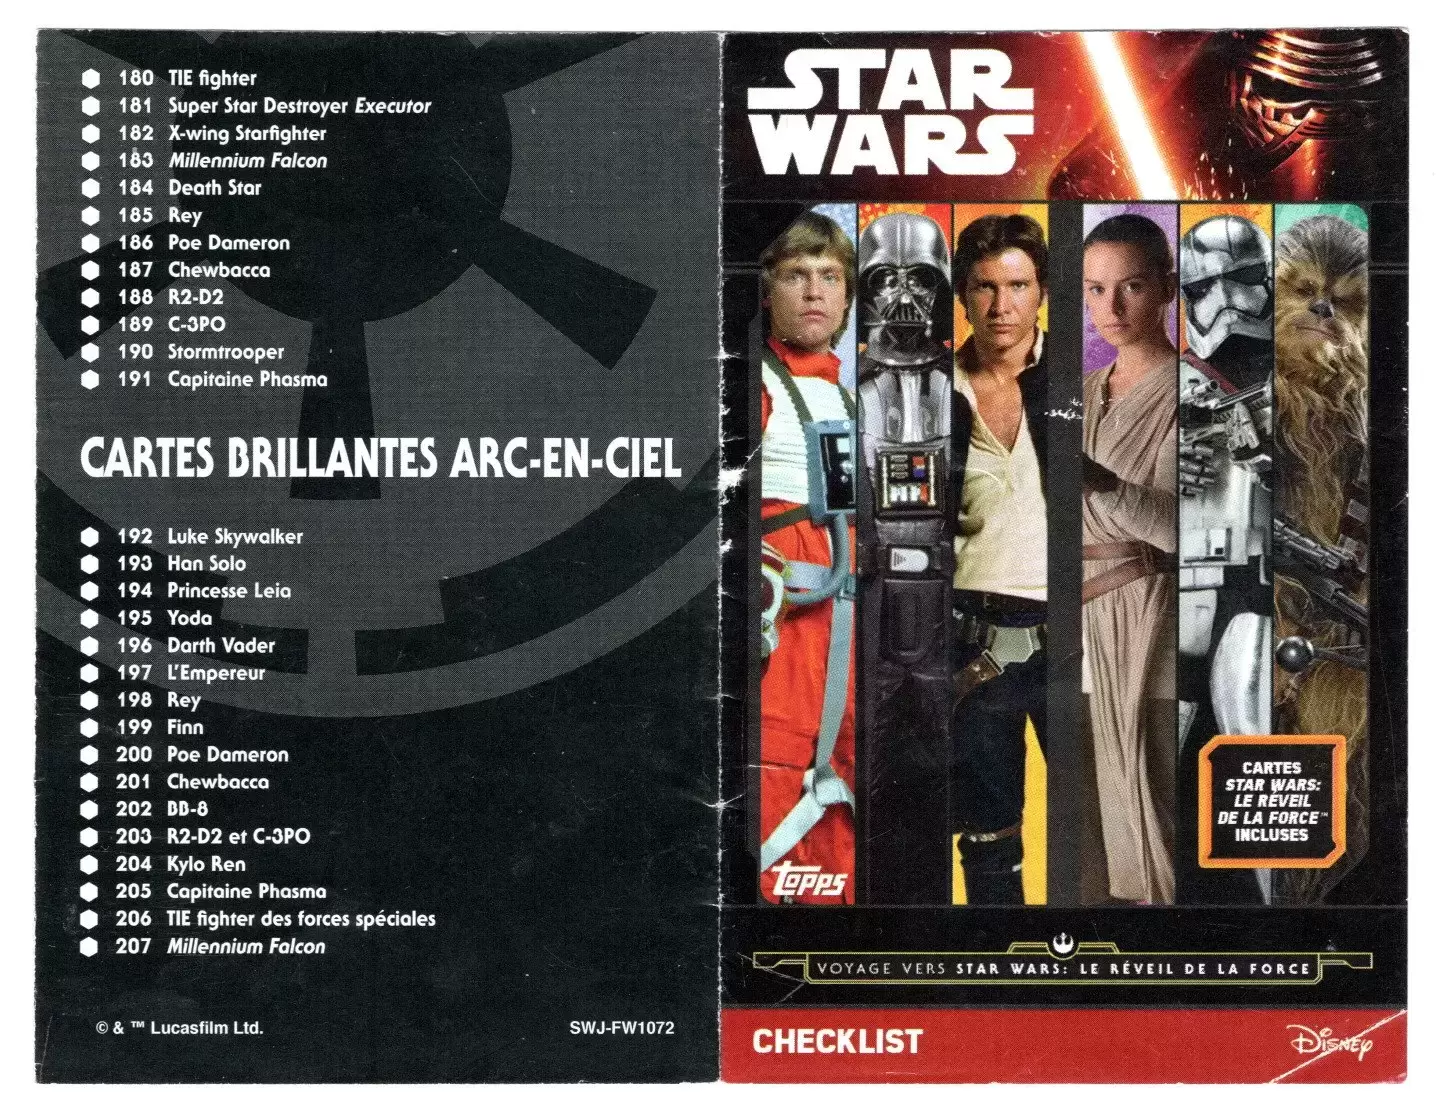 Topps - Voyage vers Star Wars : Le réveil de la force - Checklist